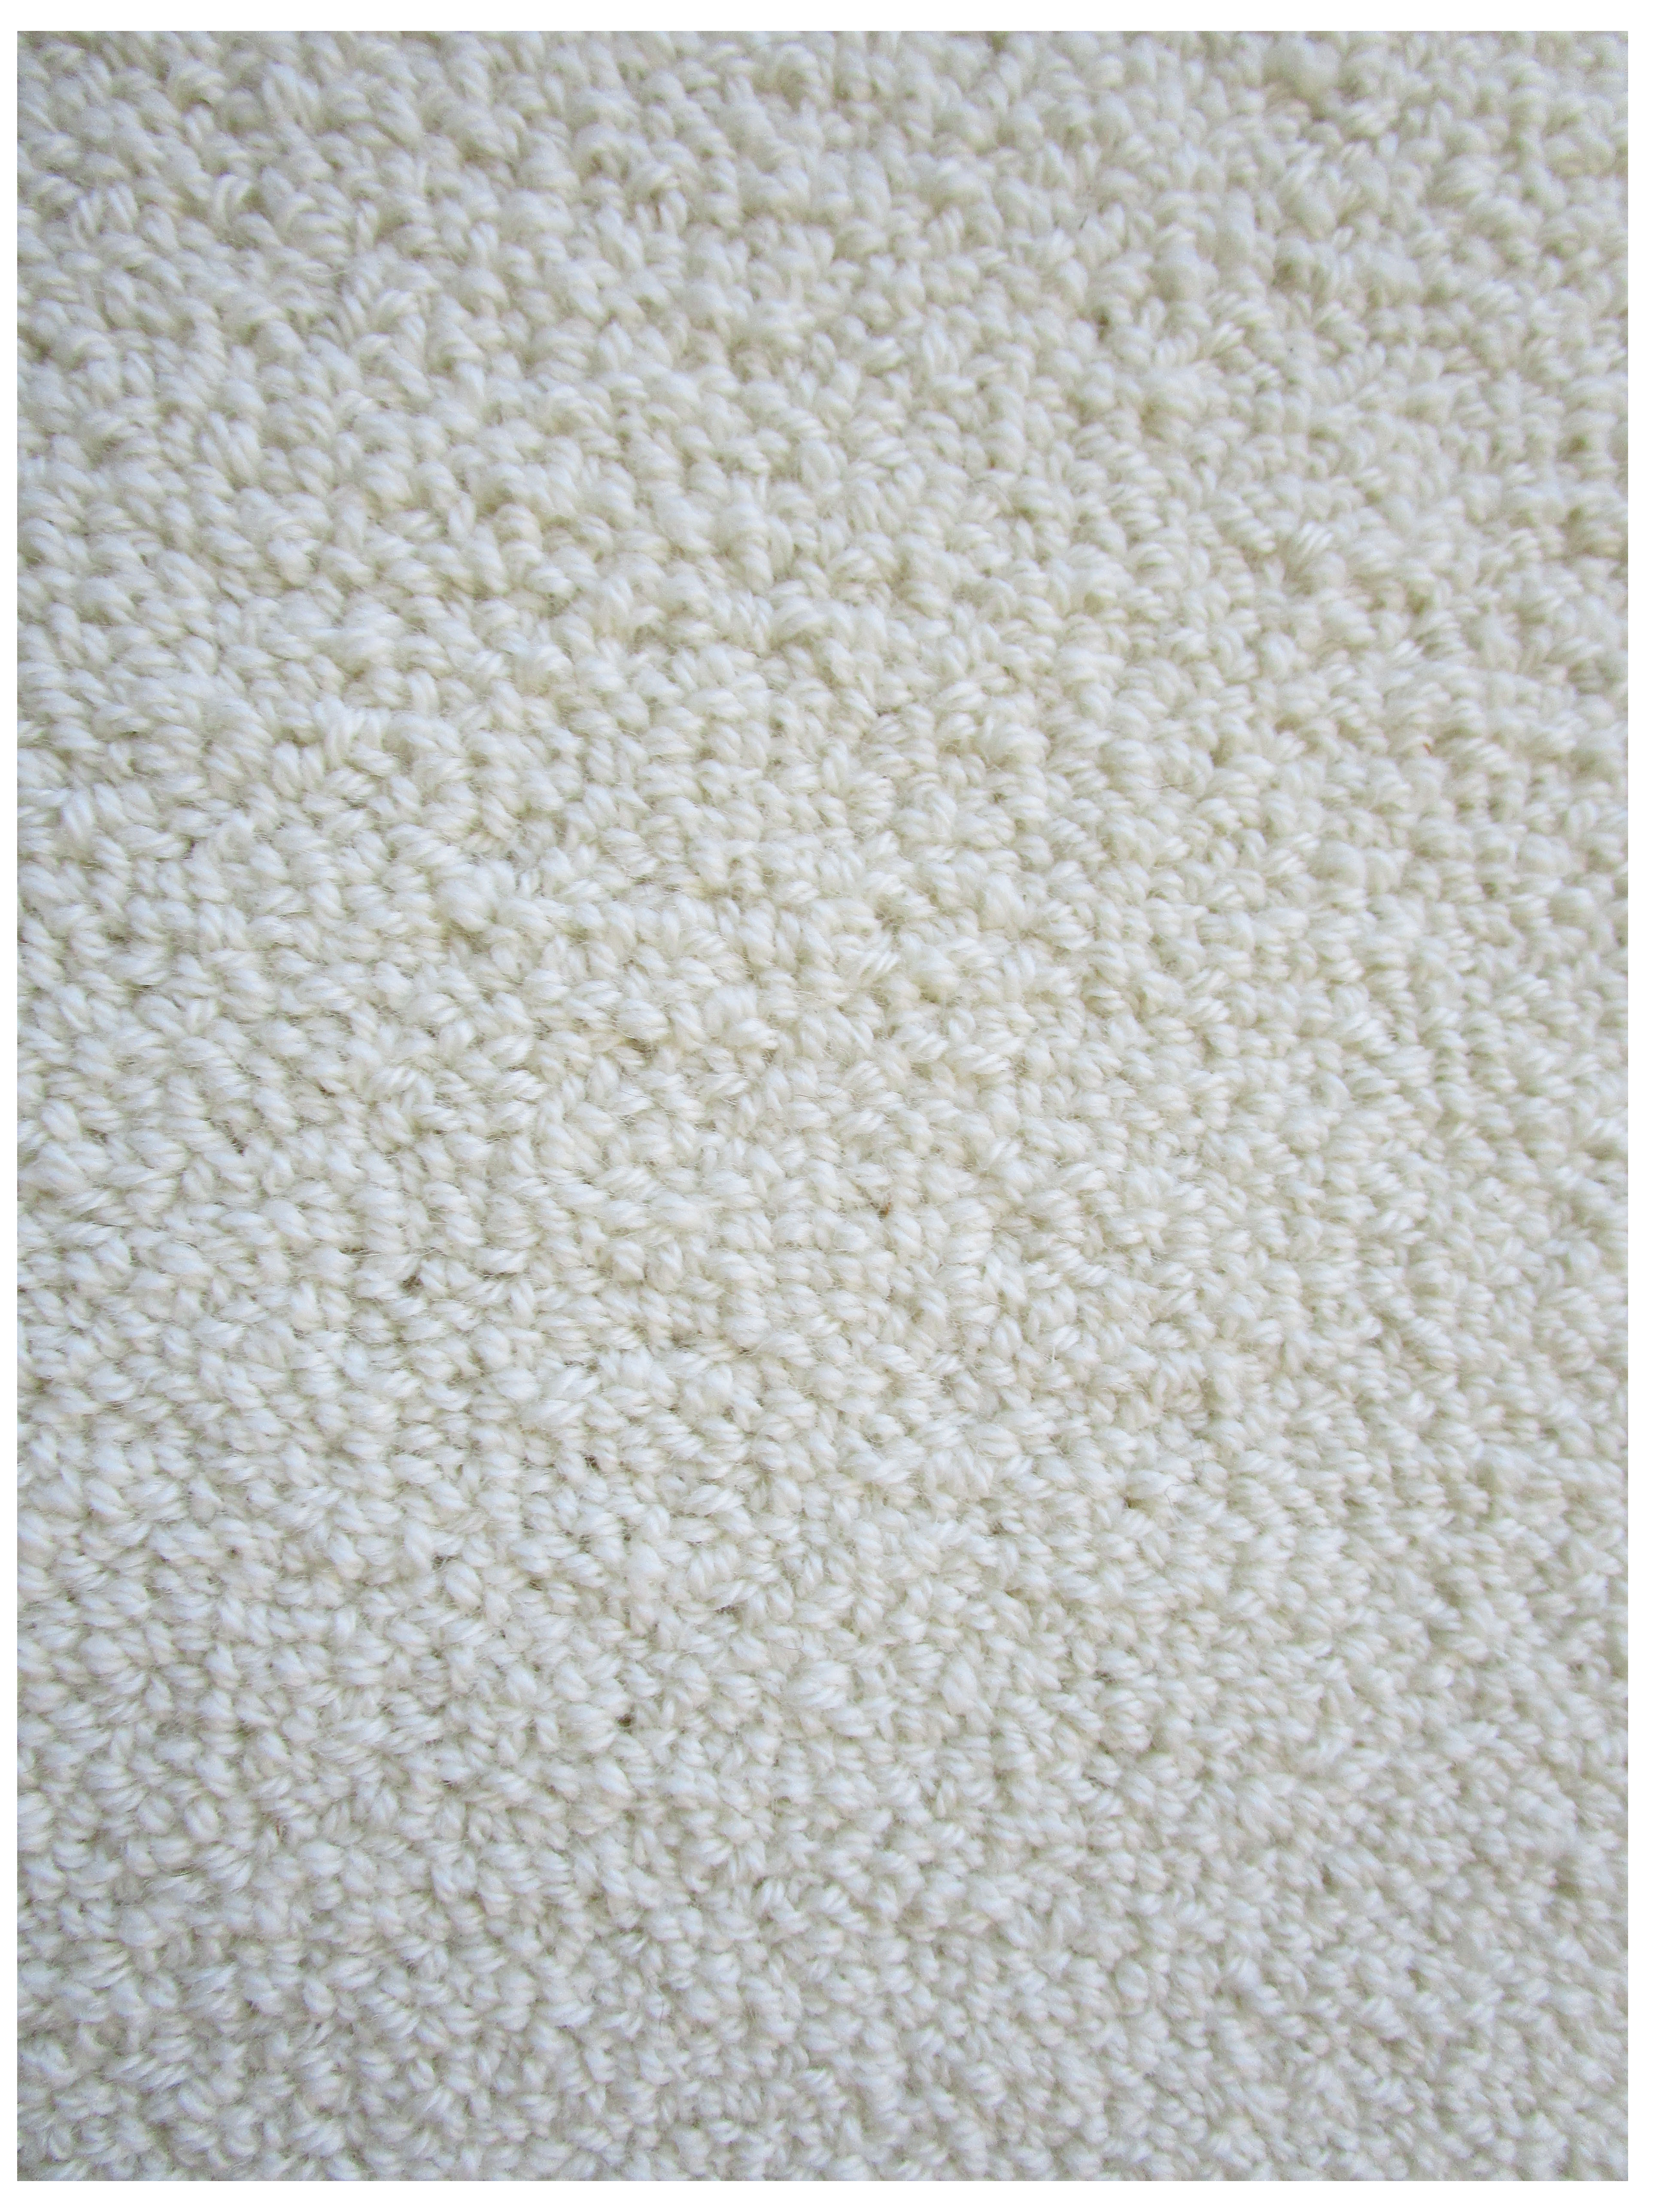 Z1 Alabaster Cream Eco Friendly Loop Pile Wool Rug / Carpet 